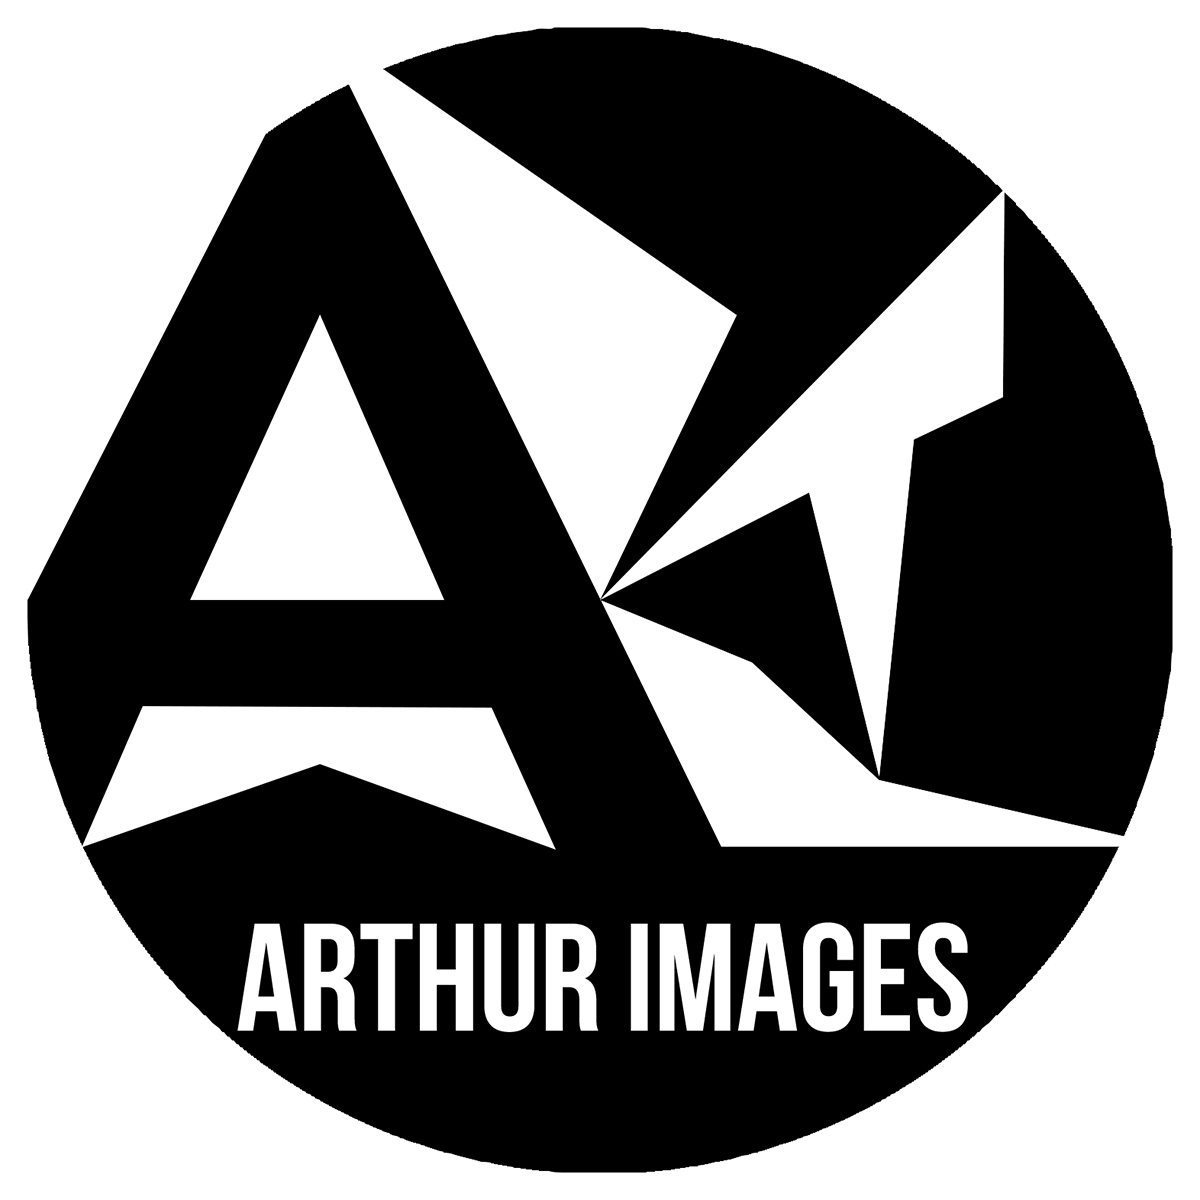 Arthur Images